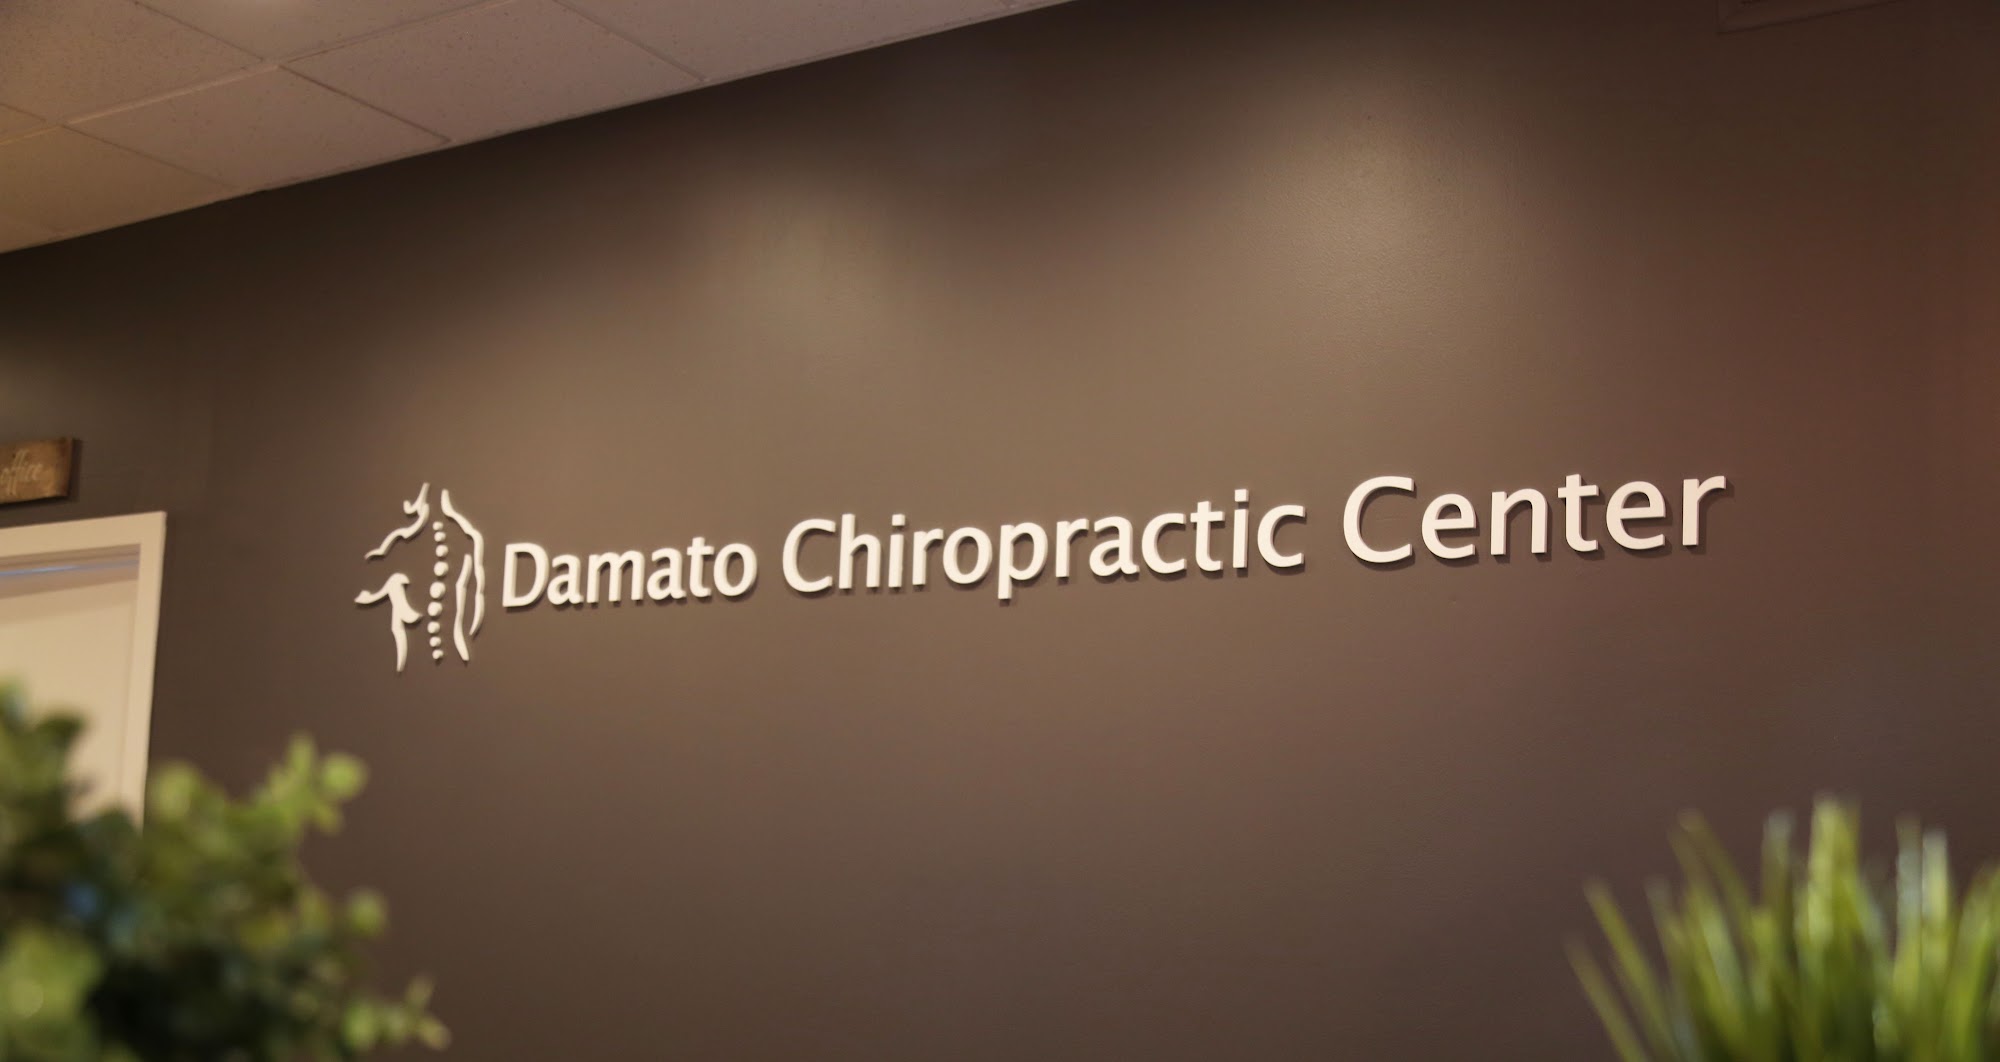 Damato Chiropractic Center of Glastonbury